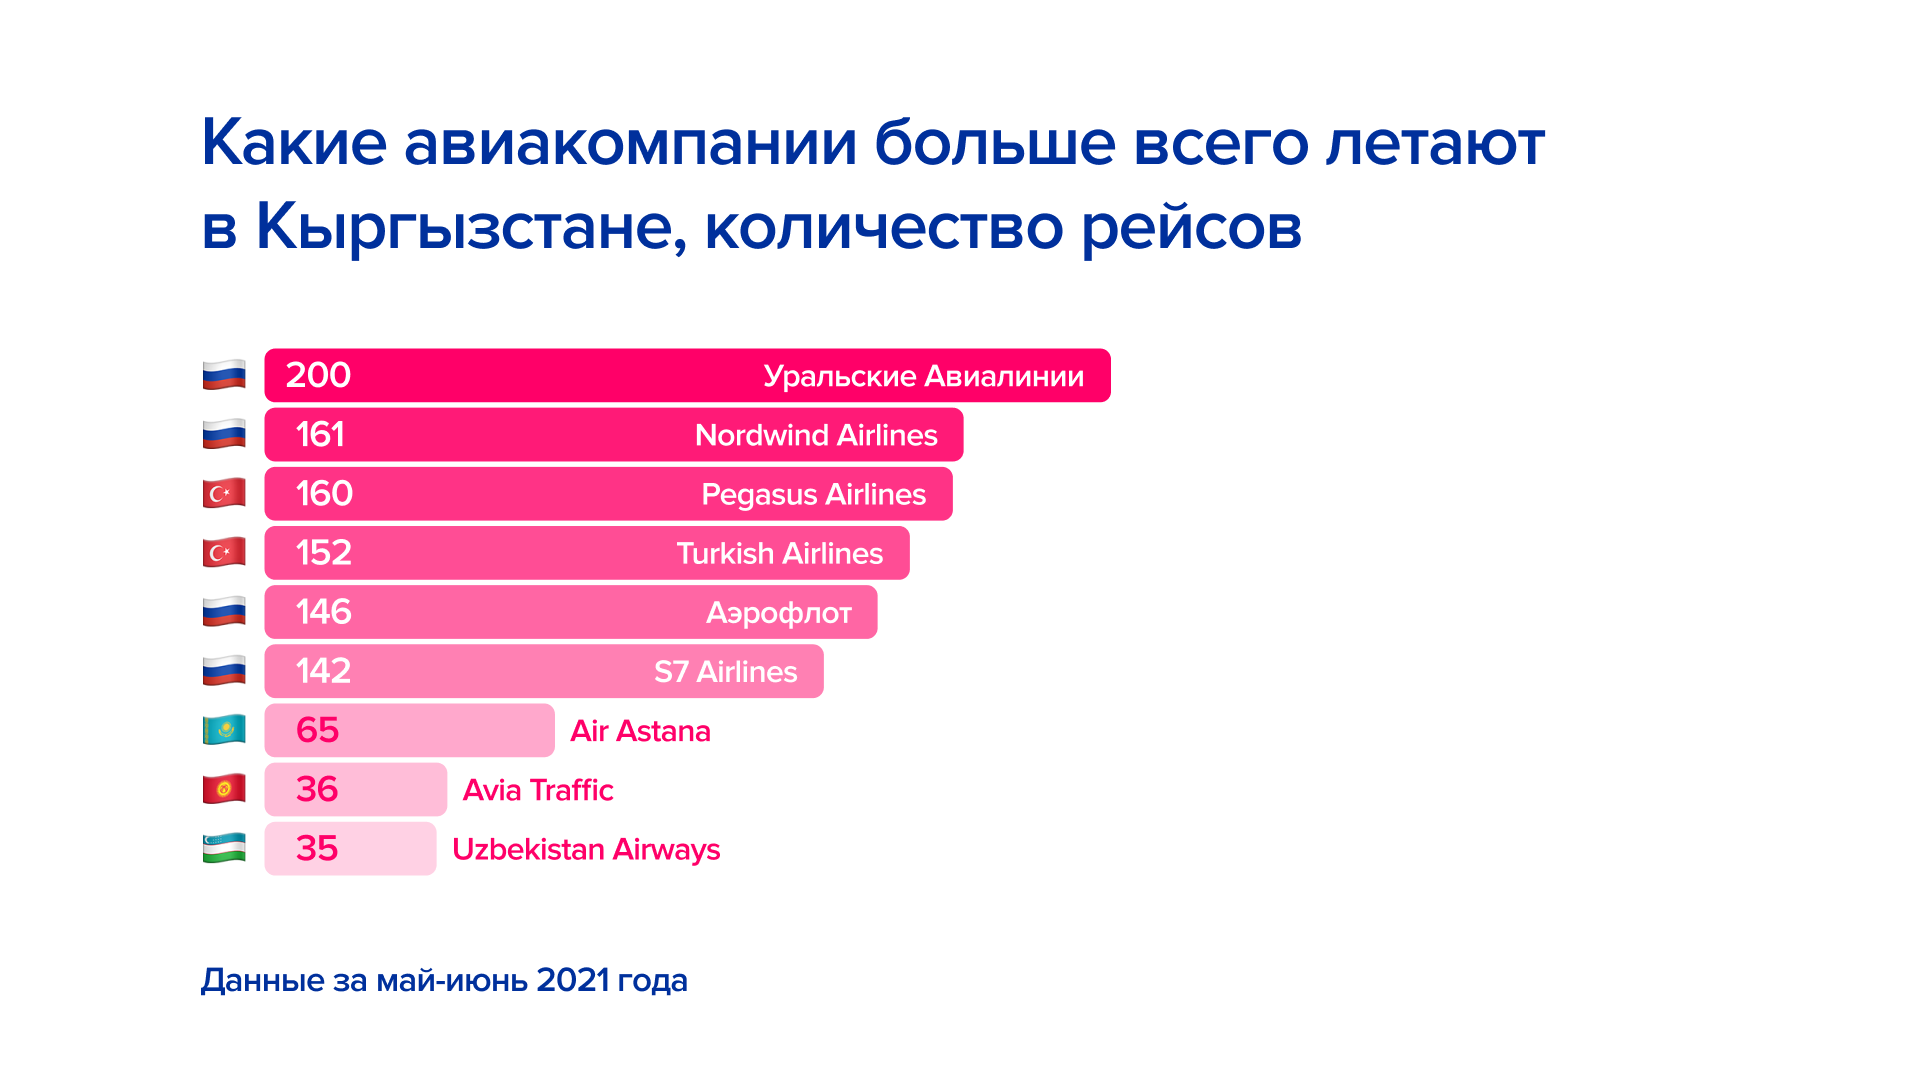 Инфографика: куда кыргызстанцы летают чаще всего? - Статьи о бизнесе